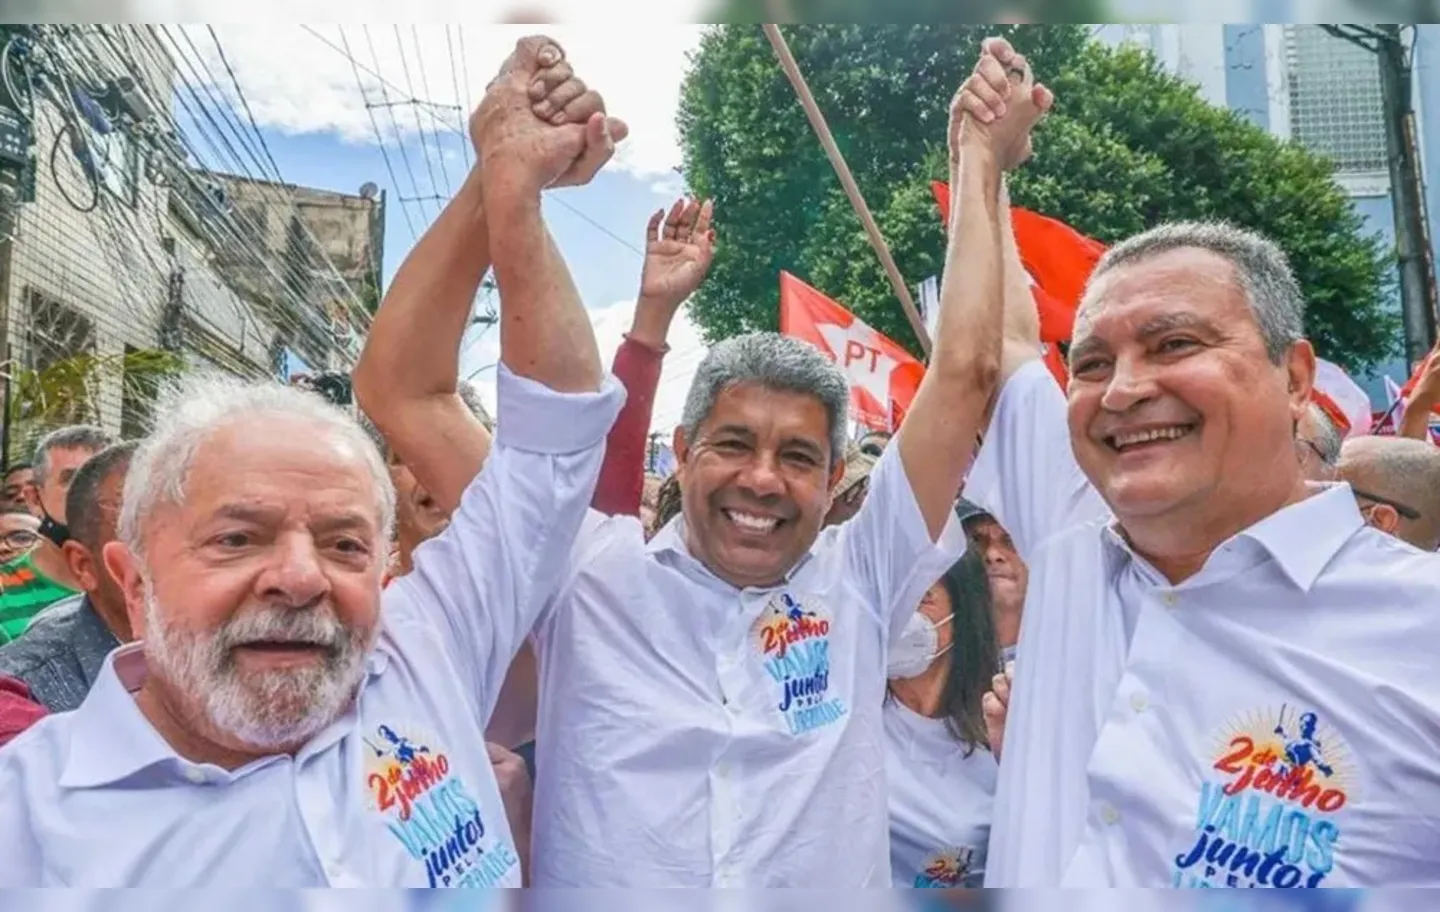 Presidente Luiz Inácio Lula da Silva (PT) anunciou que vai estar presente no lançamento da parte final do primeiro trecho da Ferrovia de Integração Oeste-Leste (Fiol), em Ilhéus